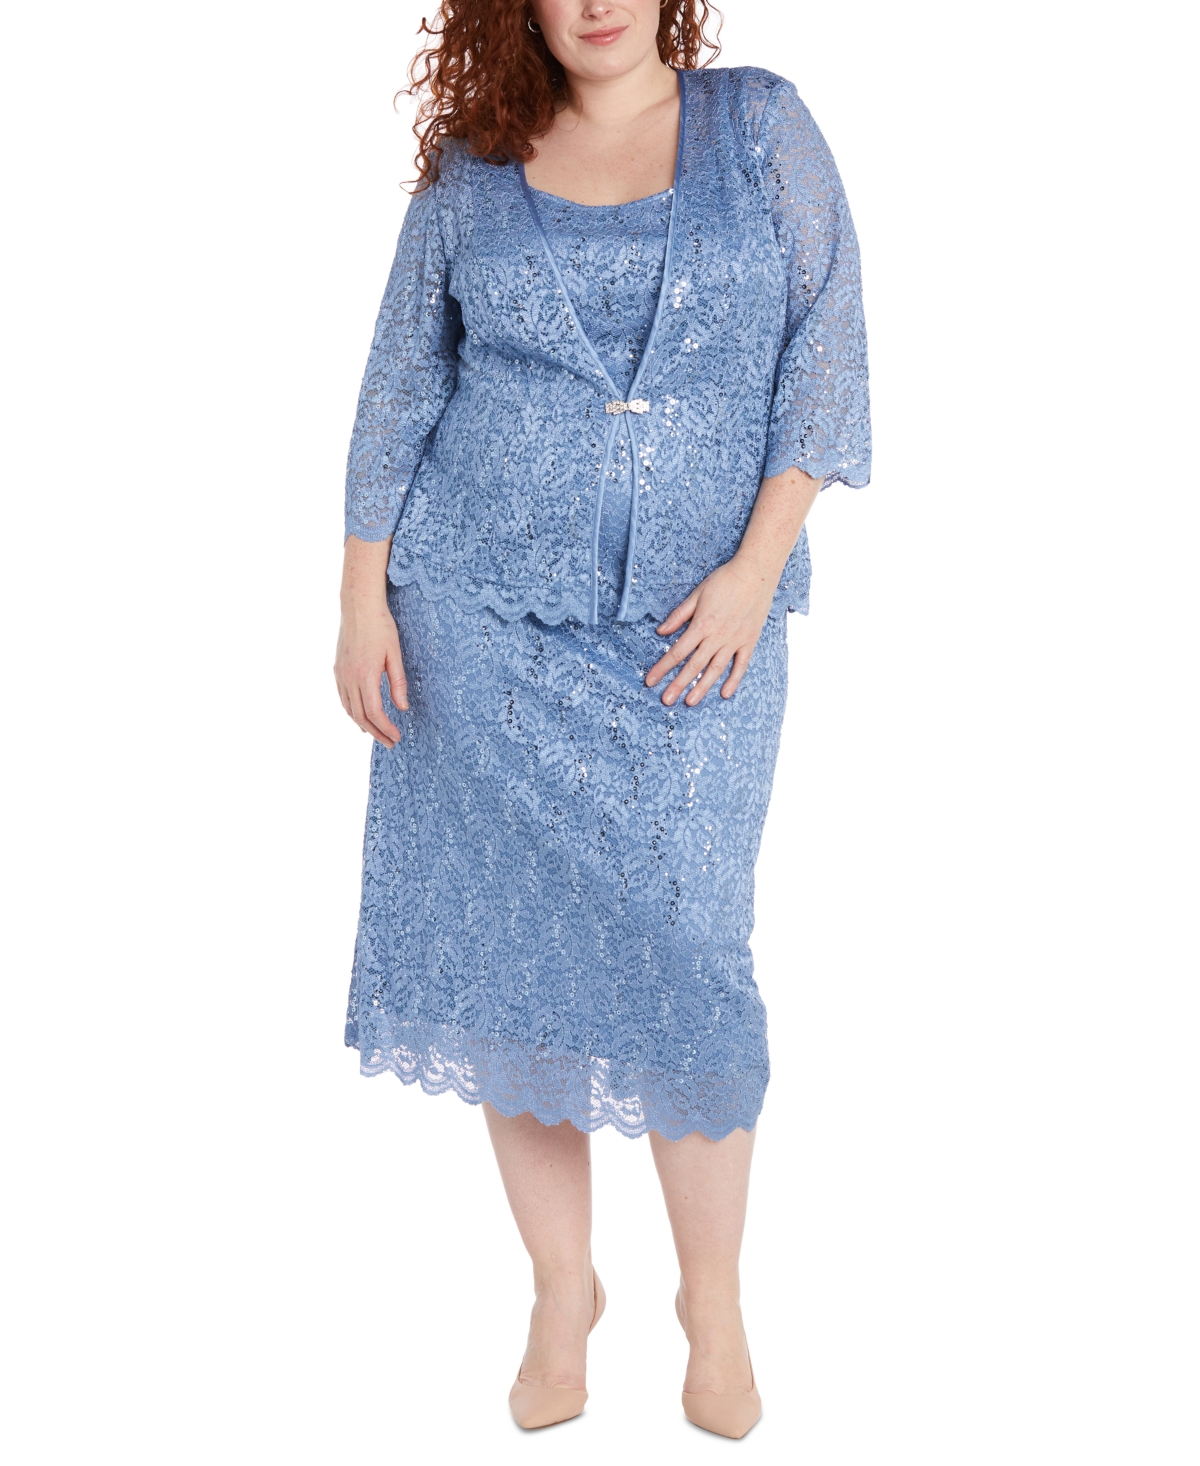 Plus Size 2-Pc. Sequined Lace Dress & Jacket Set - Dusty Blue